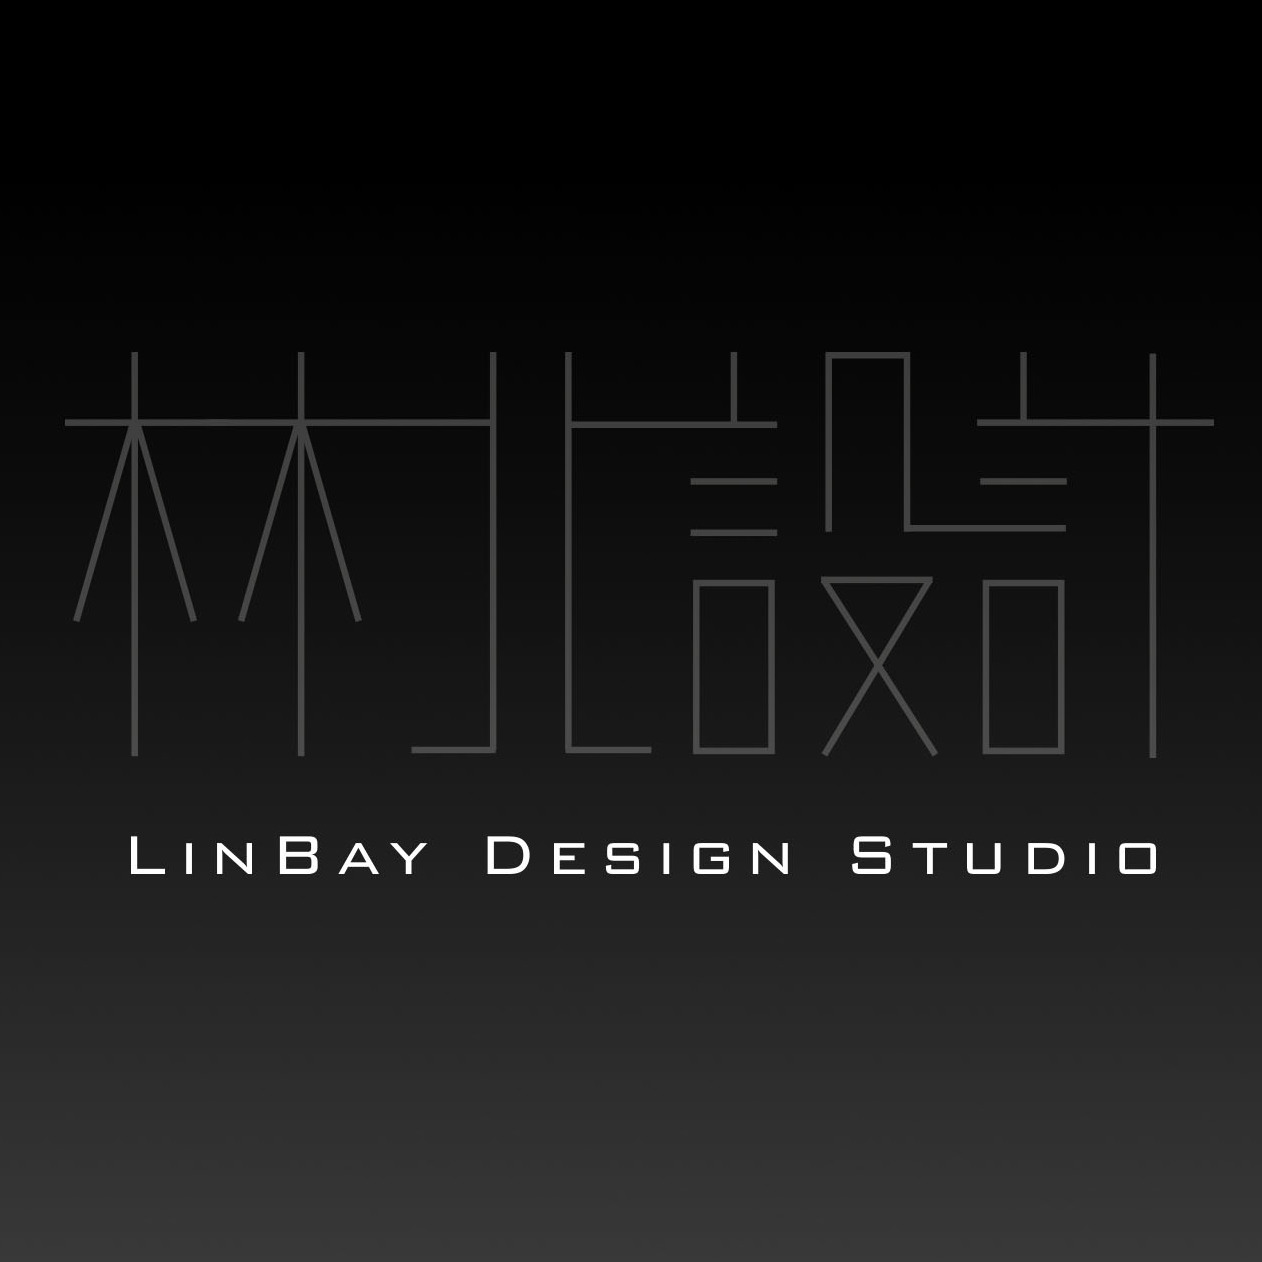 LinBay Desgin Studio